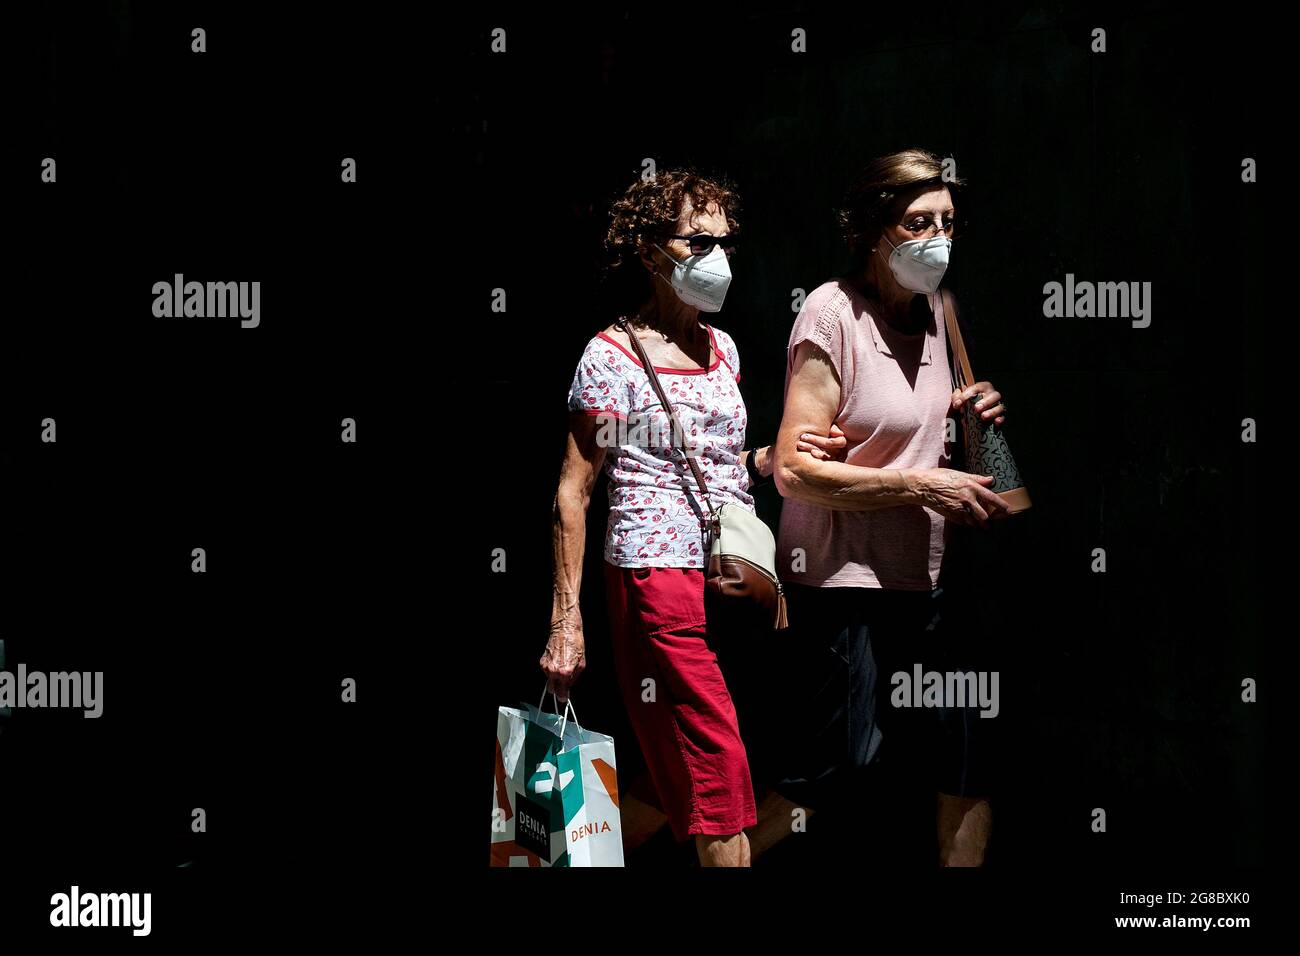 Two masked women walking in the street, Barcelona, Spain. Stock Photo